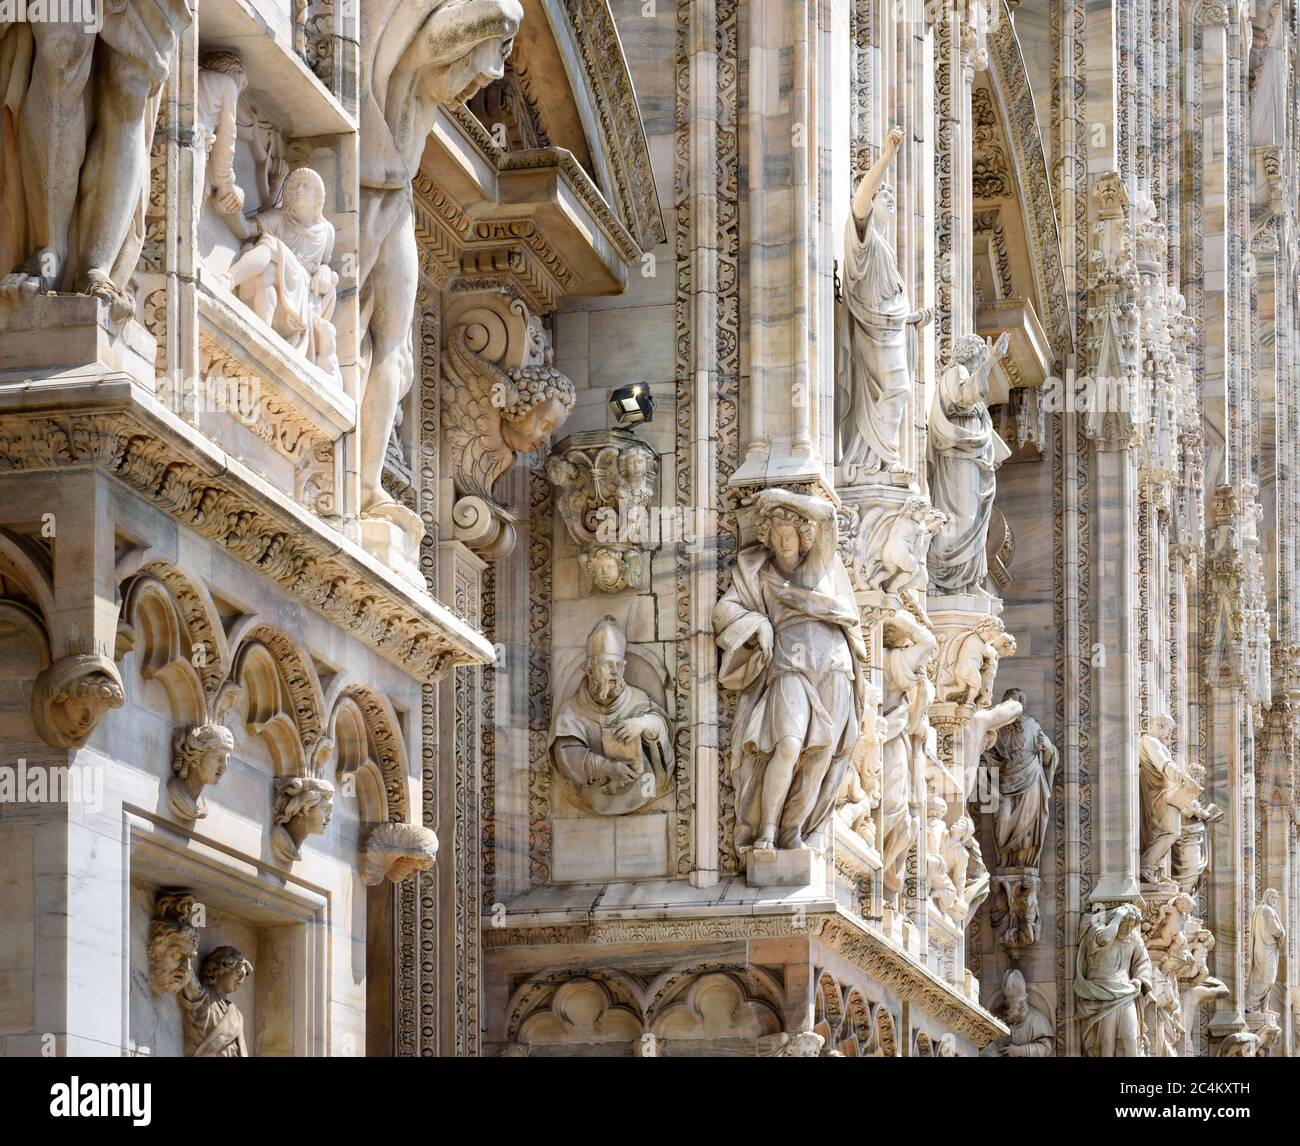 Primo piano del Duomo di Milano, Milano, Italia. Particolare di facciata di lusso con molte statue e rilievi in marmo. La Cattedrale di Milano è la parte più alta della terra Foto Stock